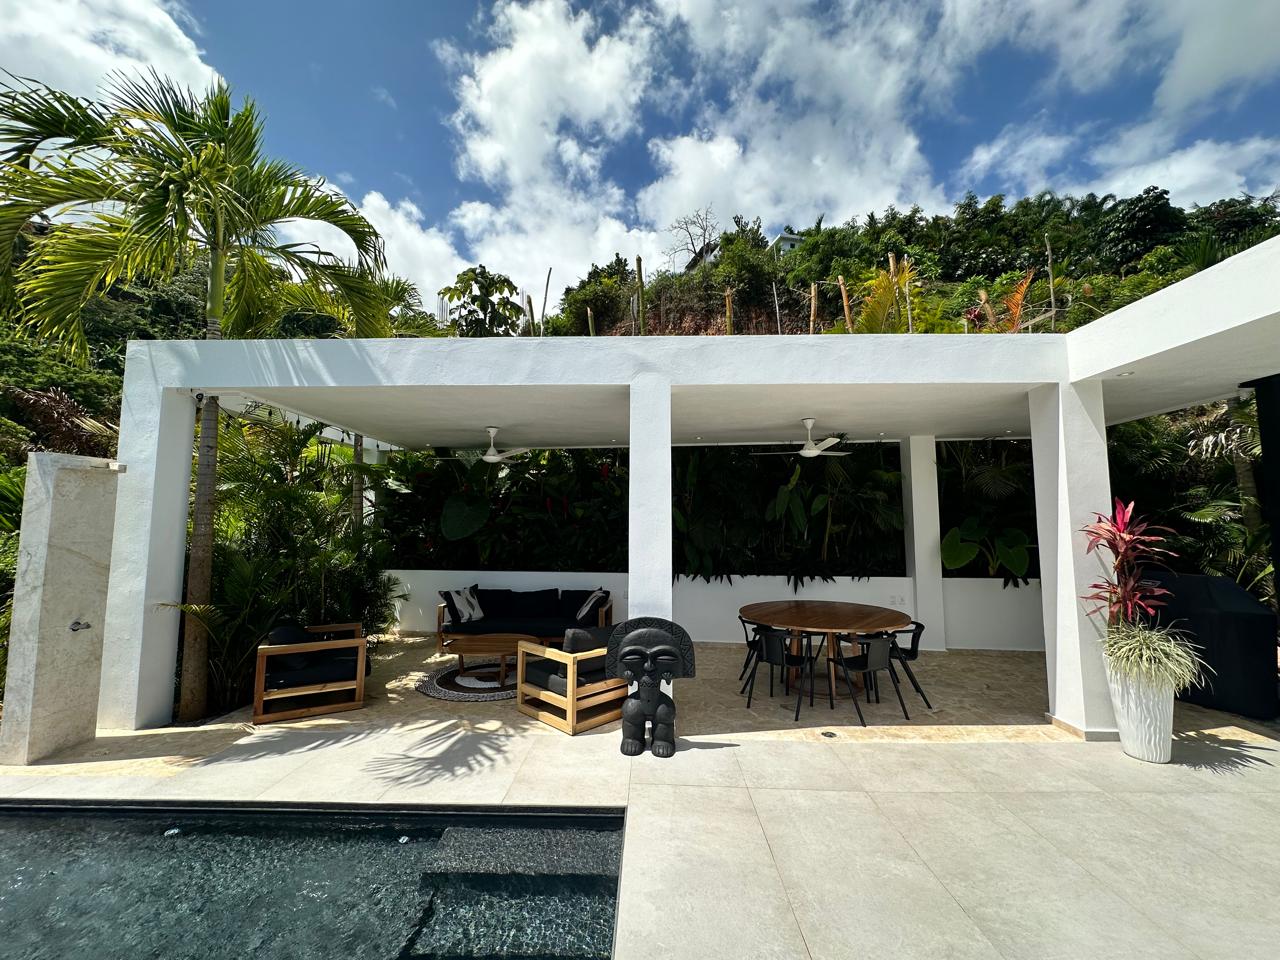 Splendid 4-bedroom villa with ocean vista - Las Terrenas Real Estate - Ocean Edge Dominican Republic (8)